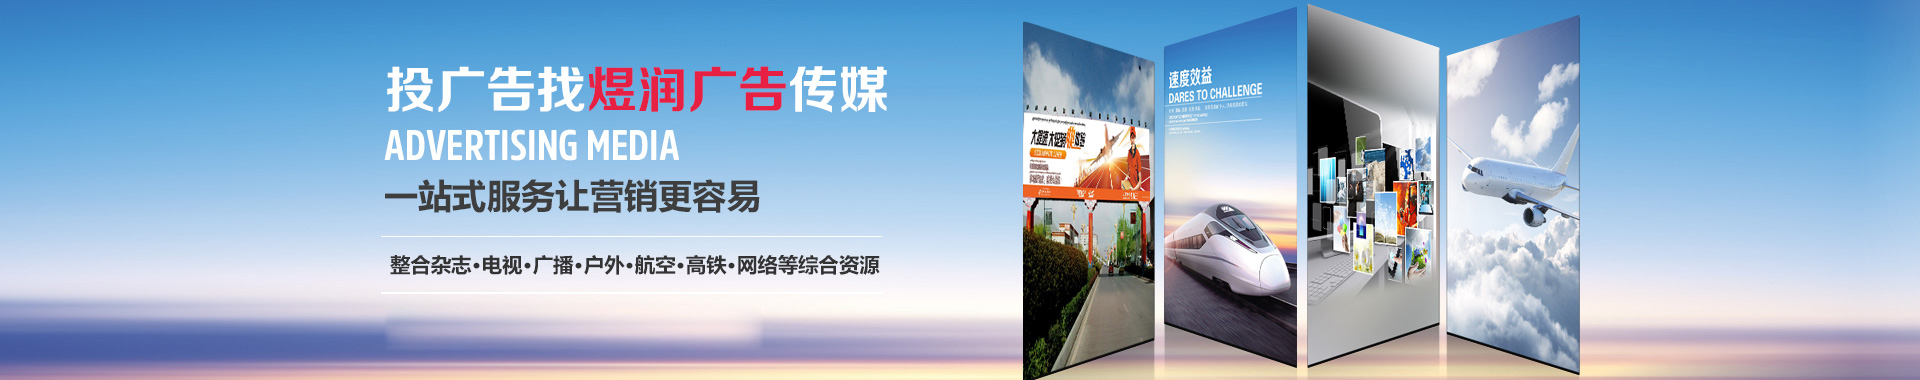 上海电视台新闻综合频道-广告价格及电话-广告部服务